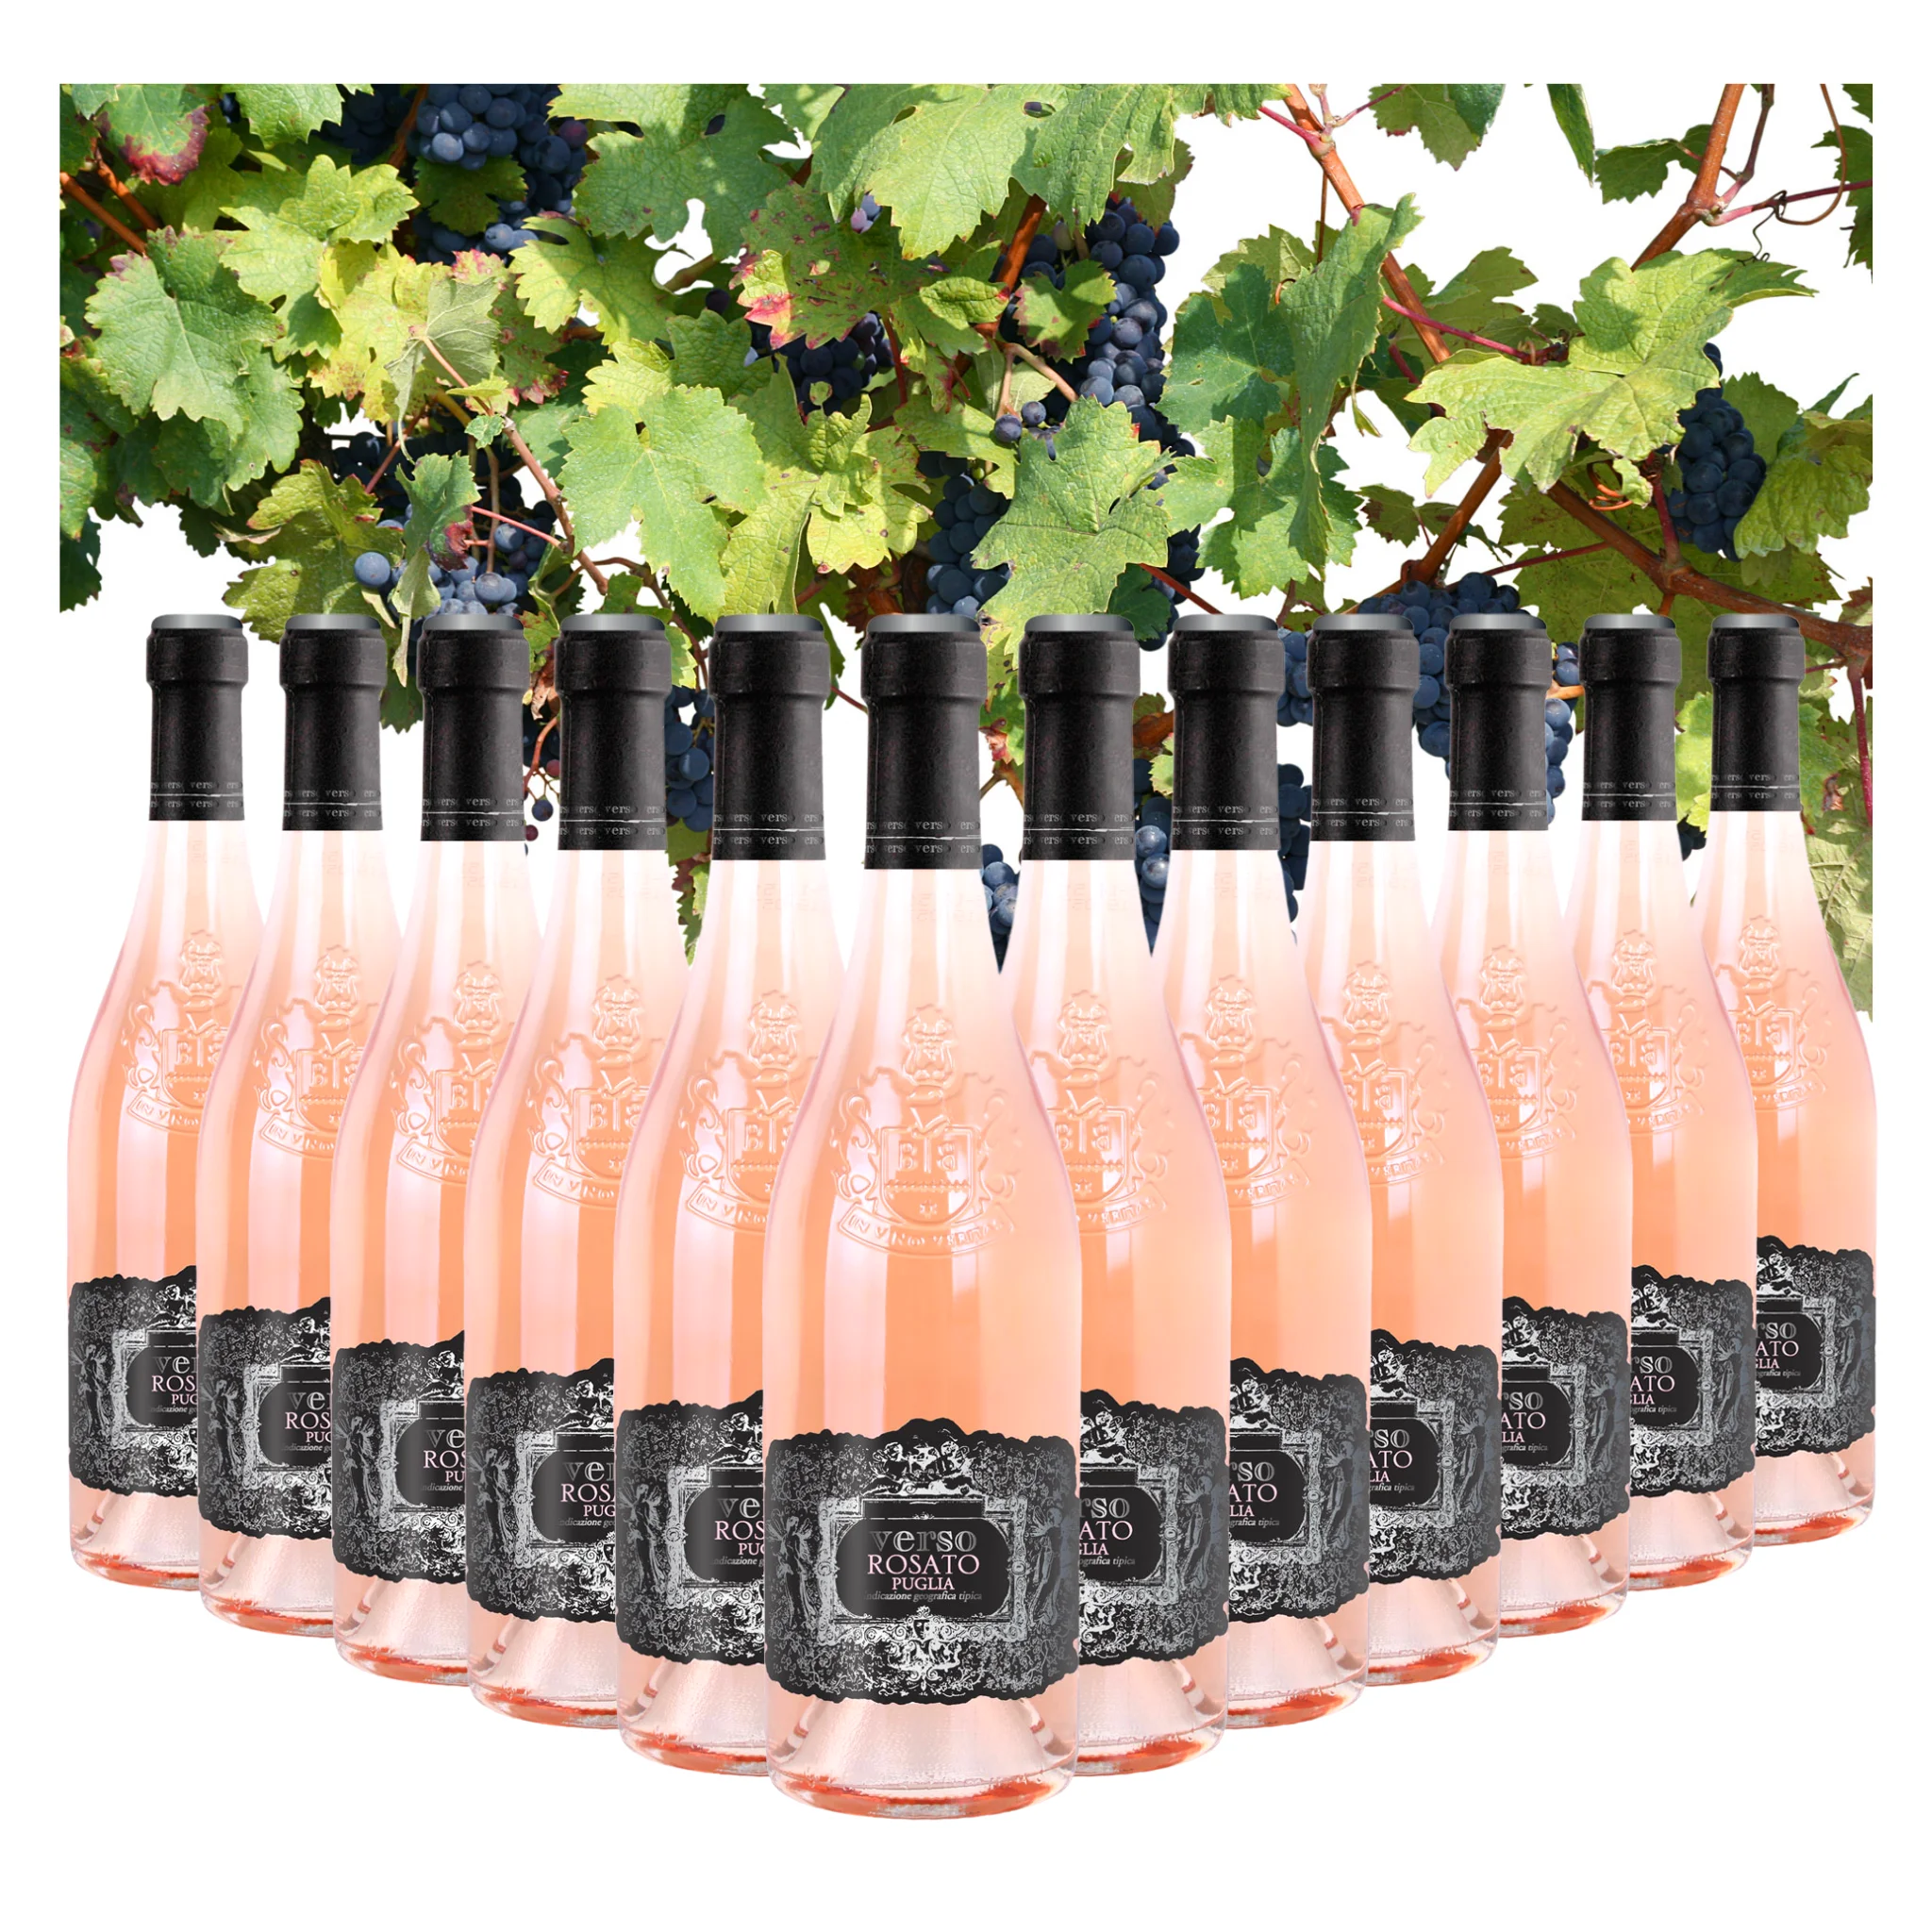 В итальянском стиле розовое вино-Rosato, IGT Verso Rosato-милое розовое вино-бутылки 750 мл спирта 12.5% для экспорта